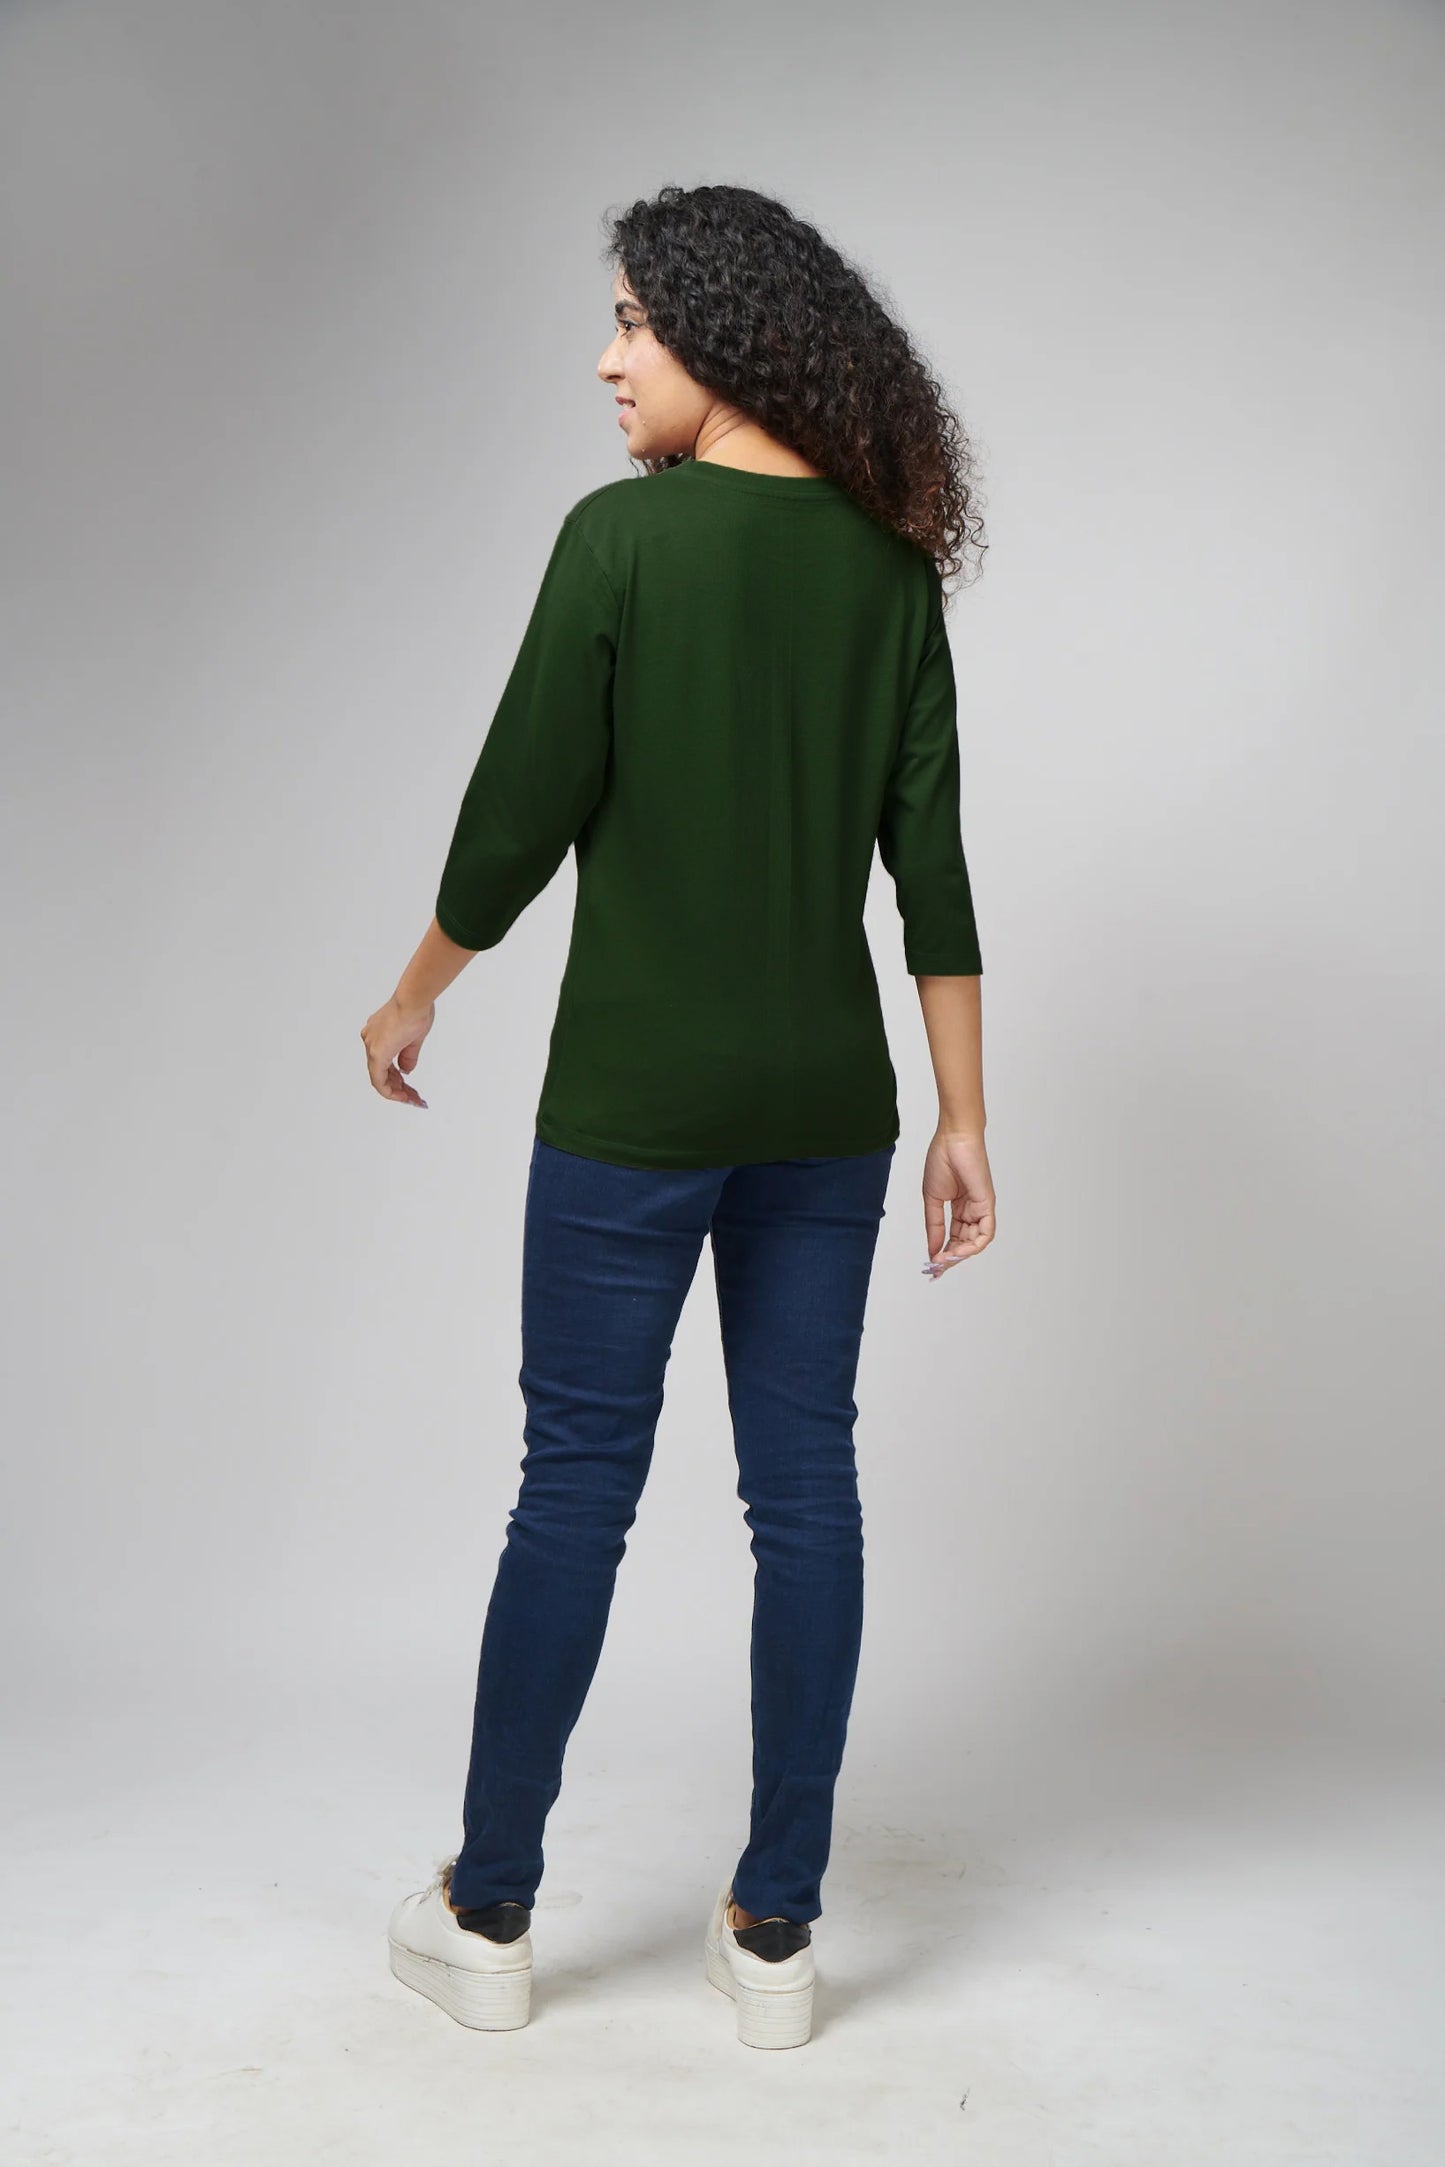 Women's Basic Olive Green Full Sleeves T-Shirt